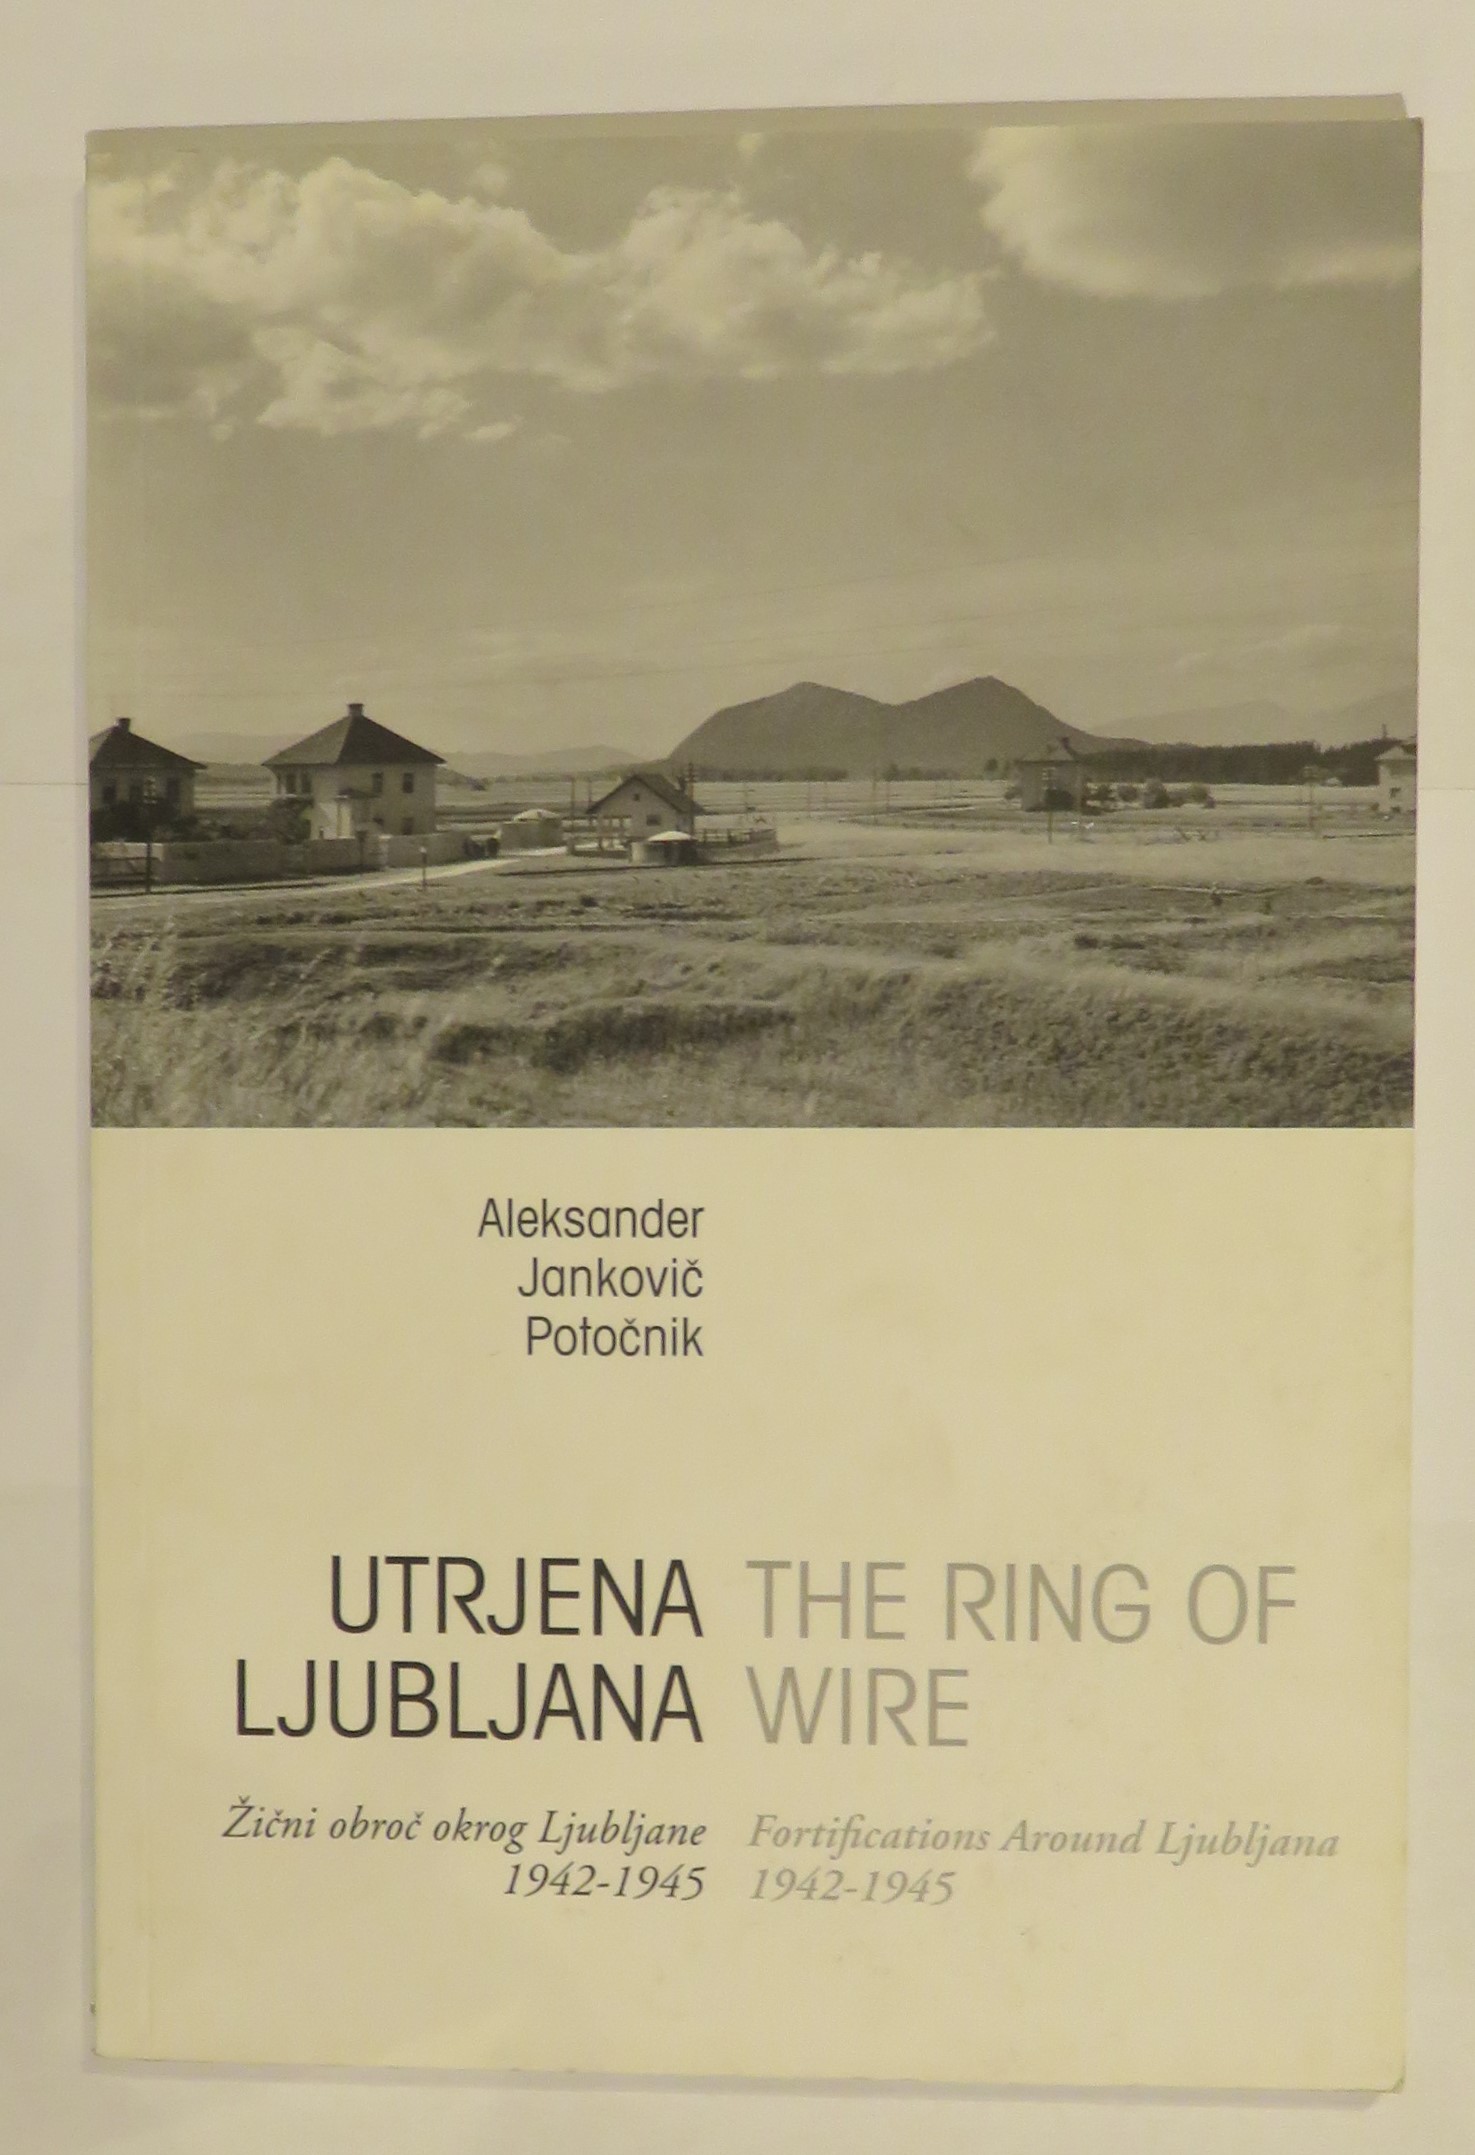 Utrjena Ljubljana: The Ring of Wire